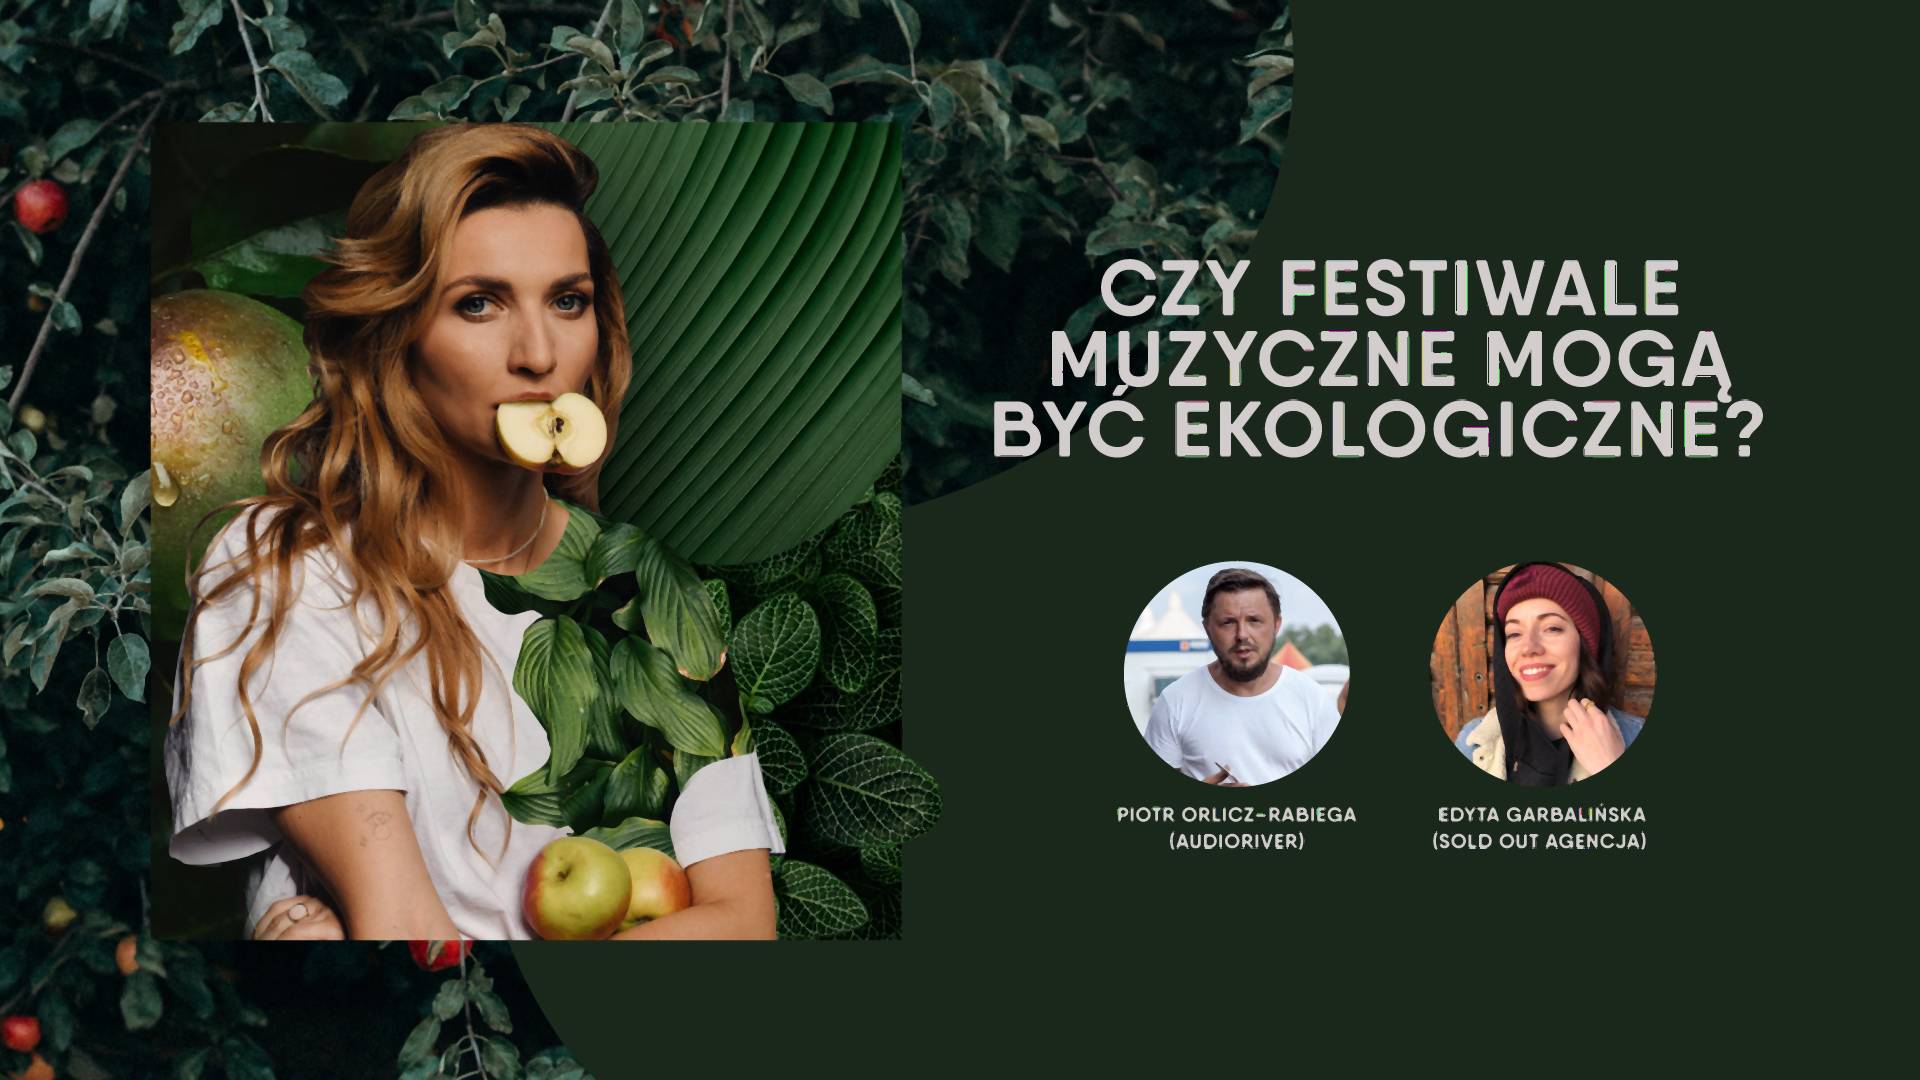 Czy polskie festiwale mogą być ekologiczne? "Pewnych rzeczy nie da się zmienić"